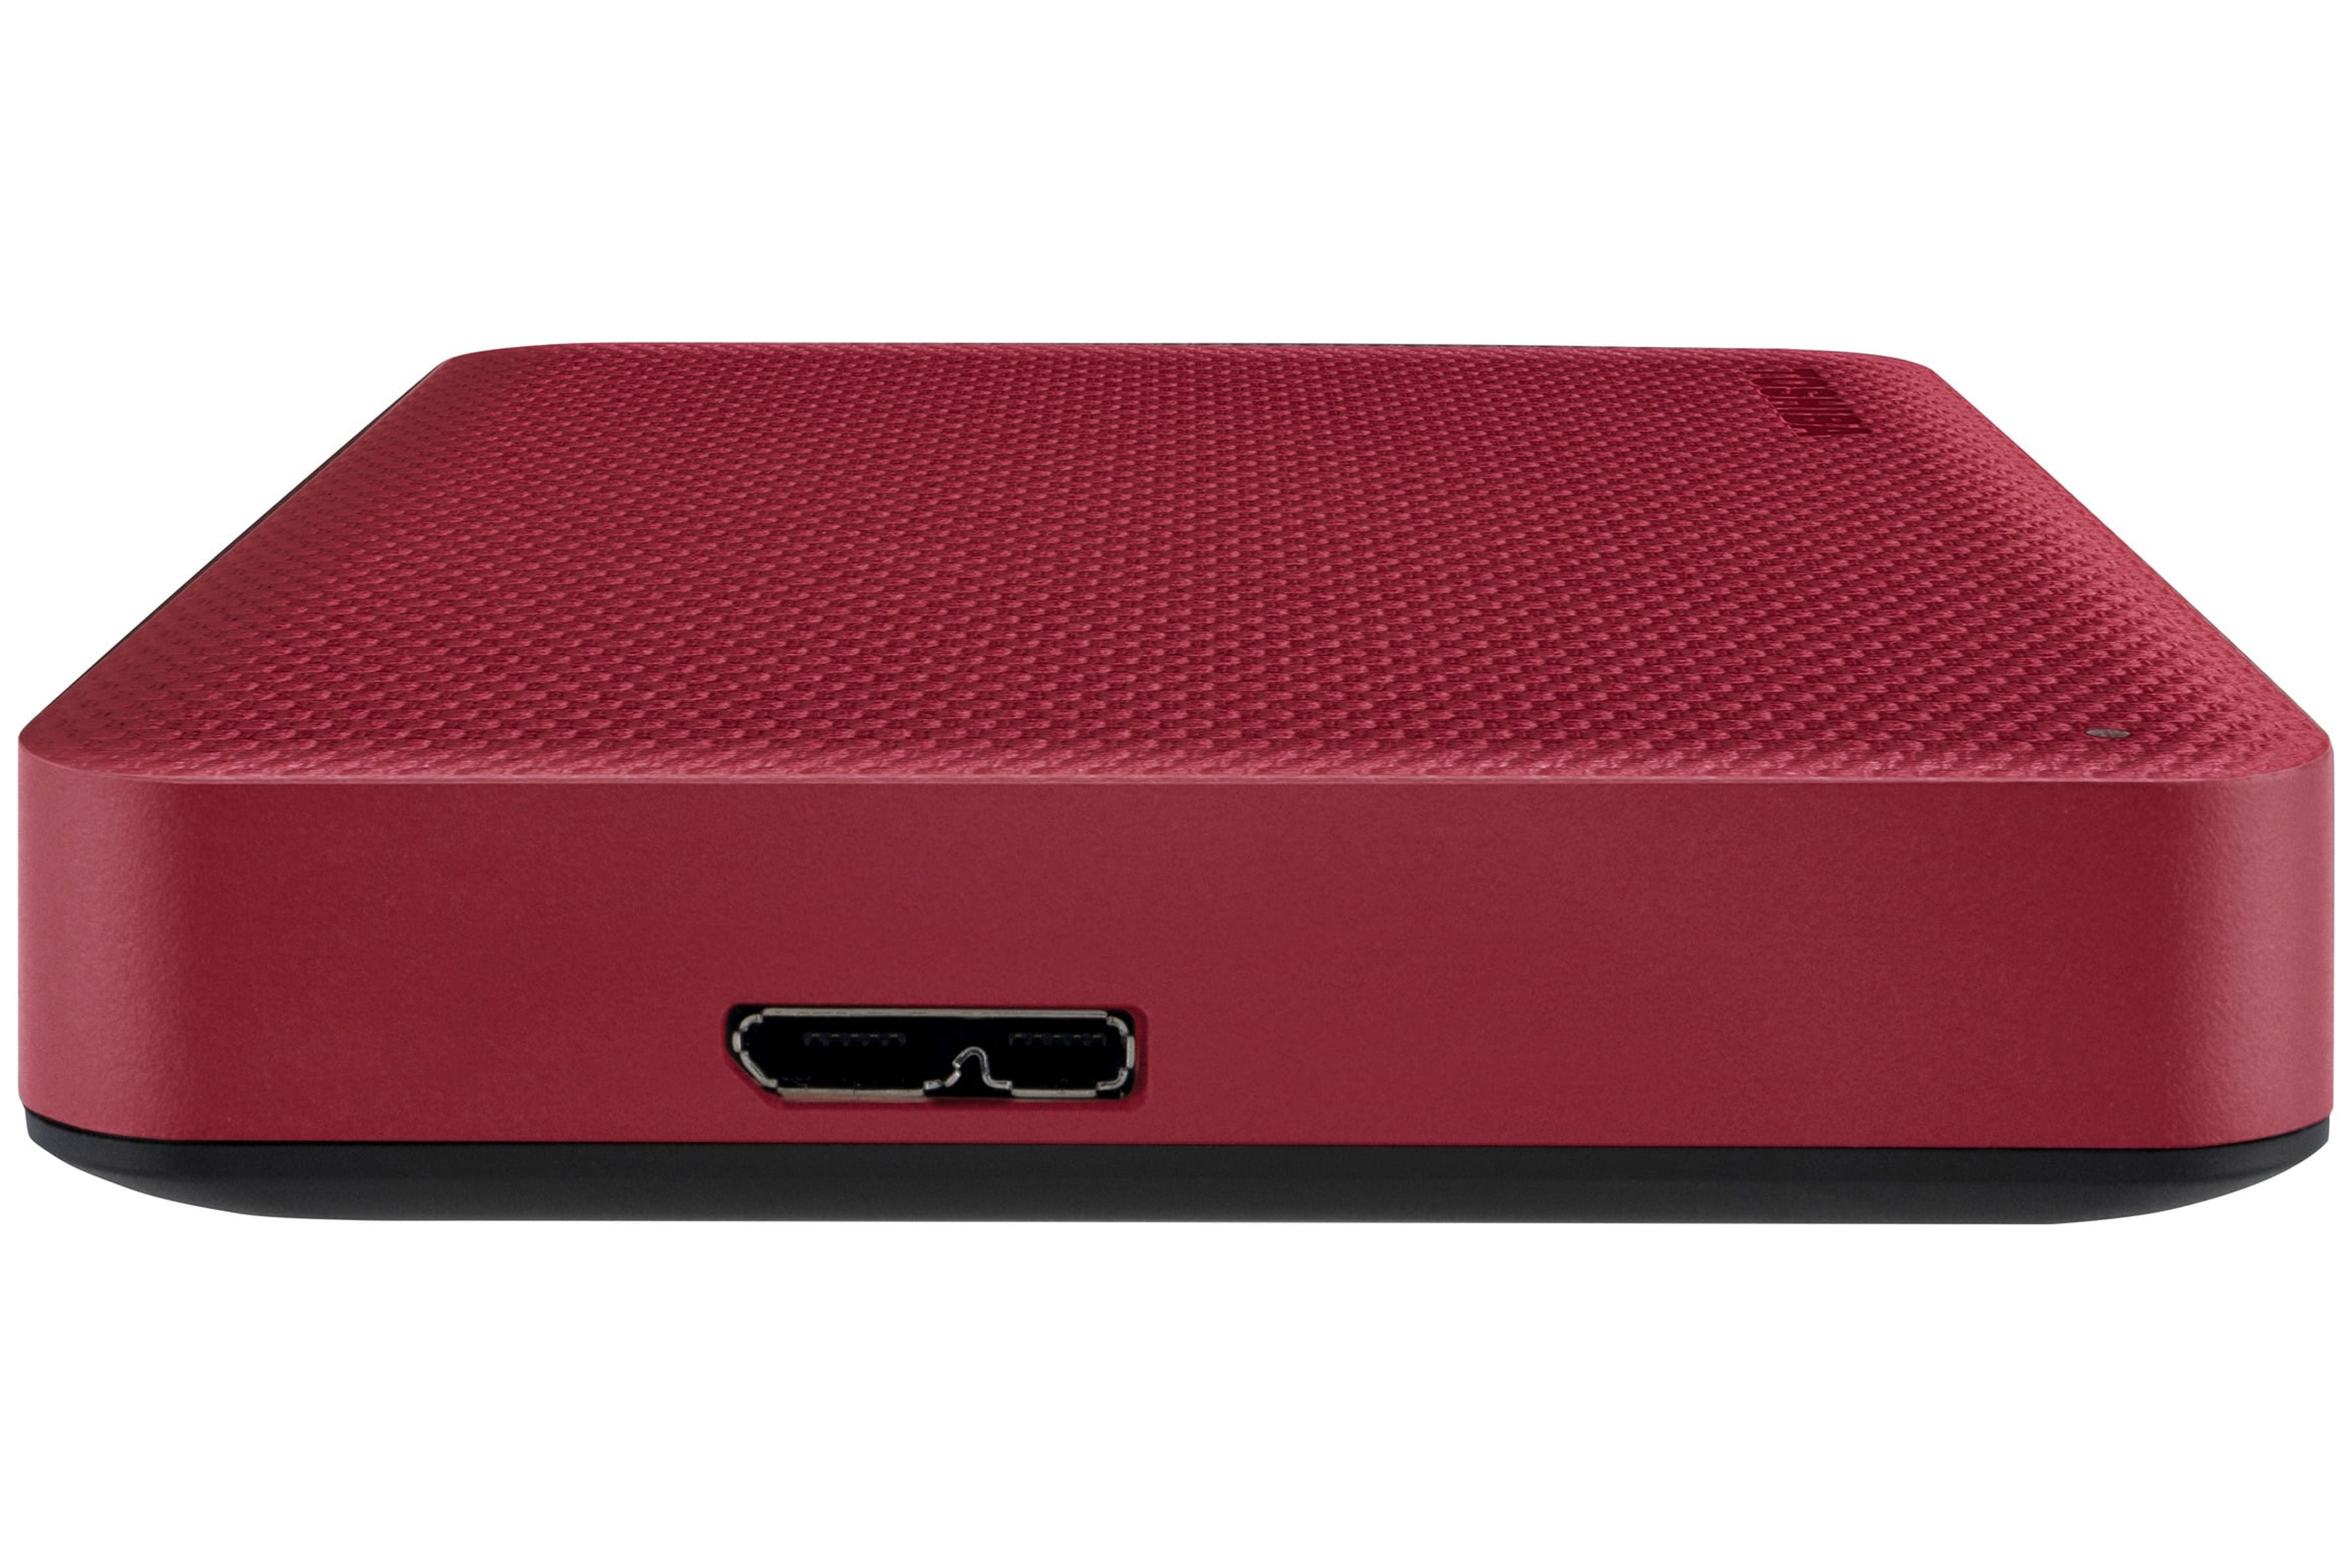 Advance RED - Portable Toshiba Hard Canvio Drive 2TB